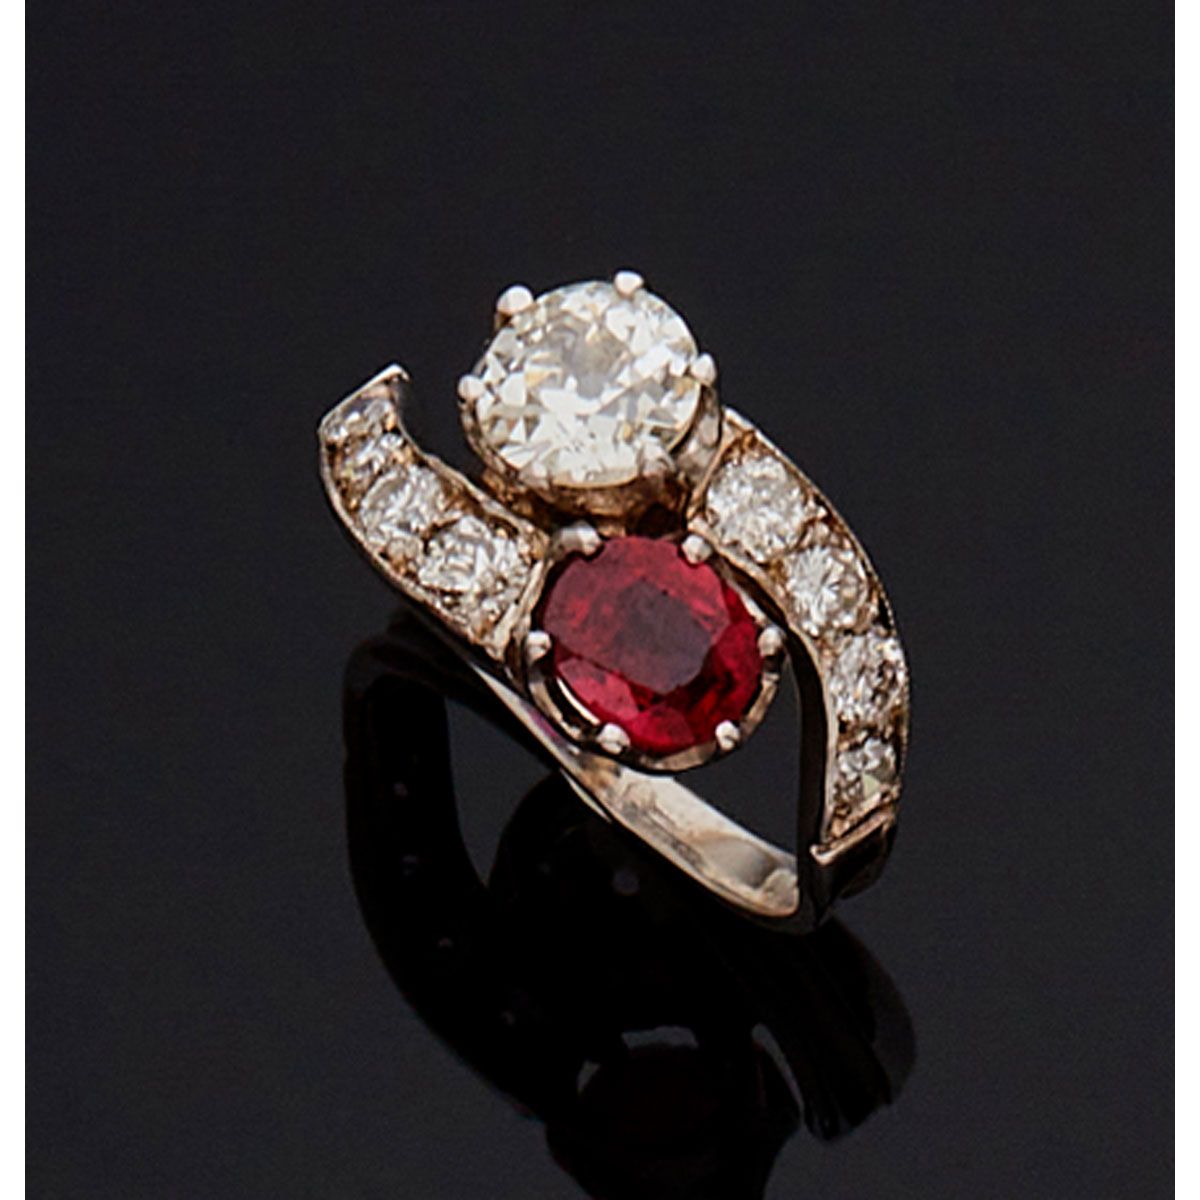 Null 18K白金交叉戒指，镶嵌一颗老式切割钻石和一颗红宝石，周围镶嵌明亮式切割钻石。

B.P. 3.7g。- TDD 51